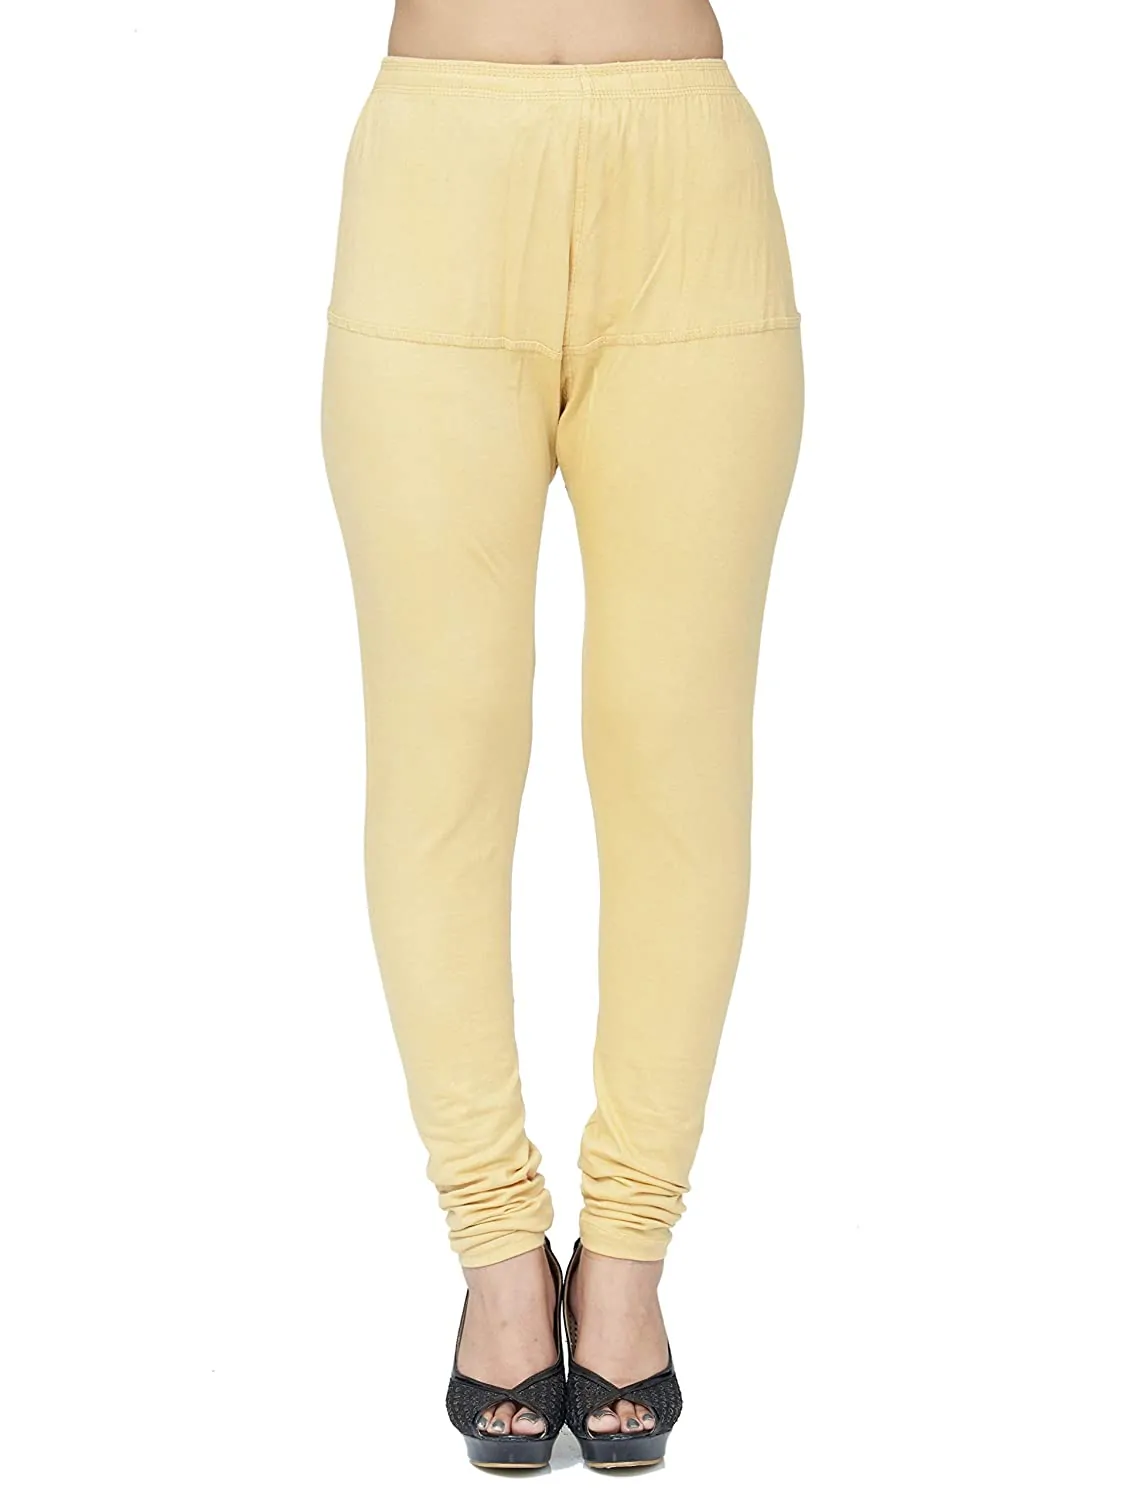 Skin color ladies cotton lycra premium leggings-LGP13